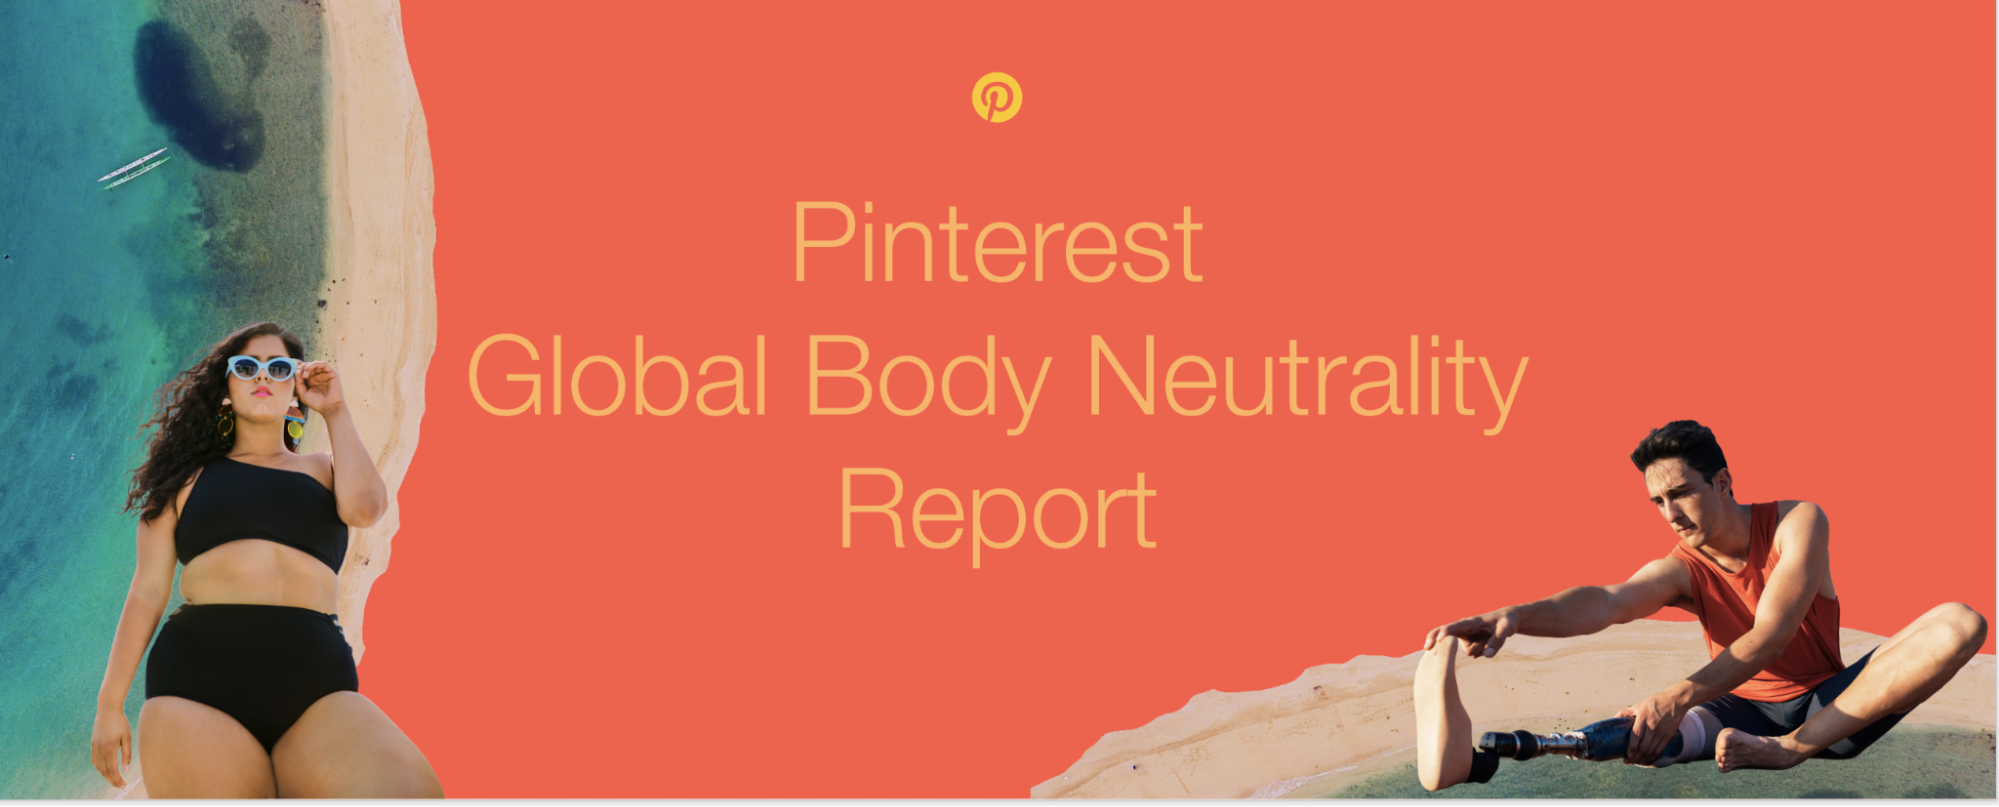 Pinterest、ボディーニュートラルレポートを発表